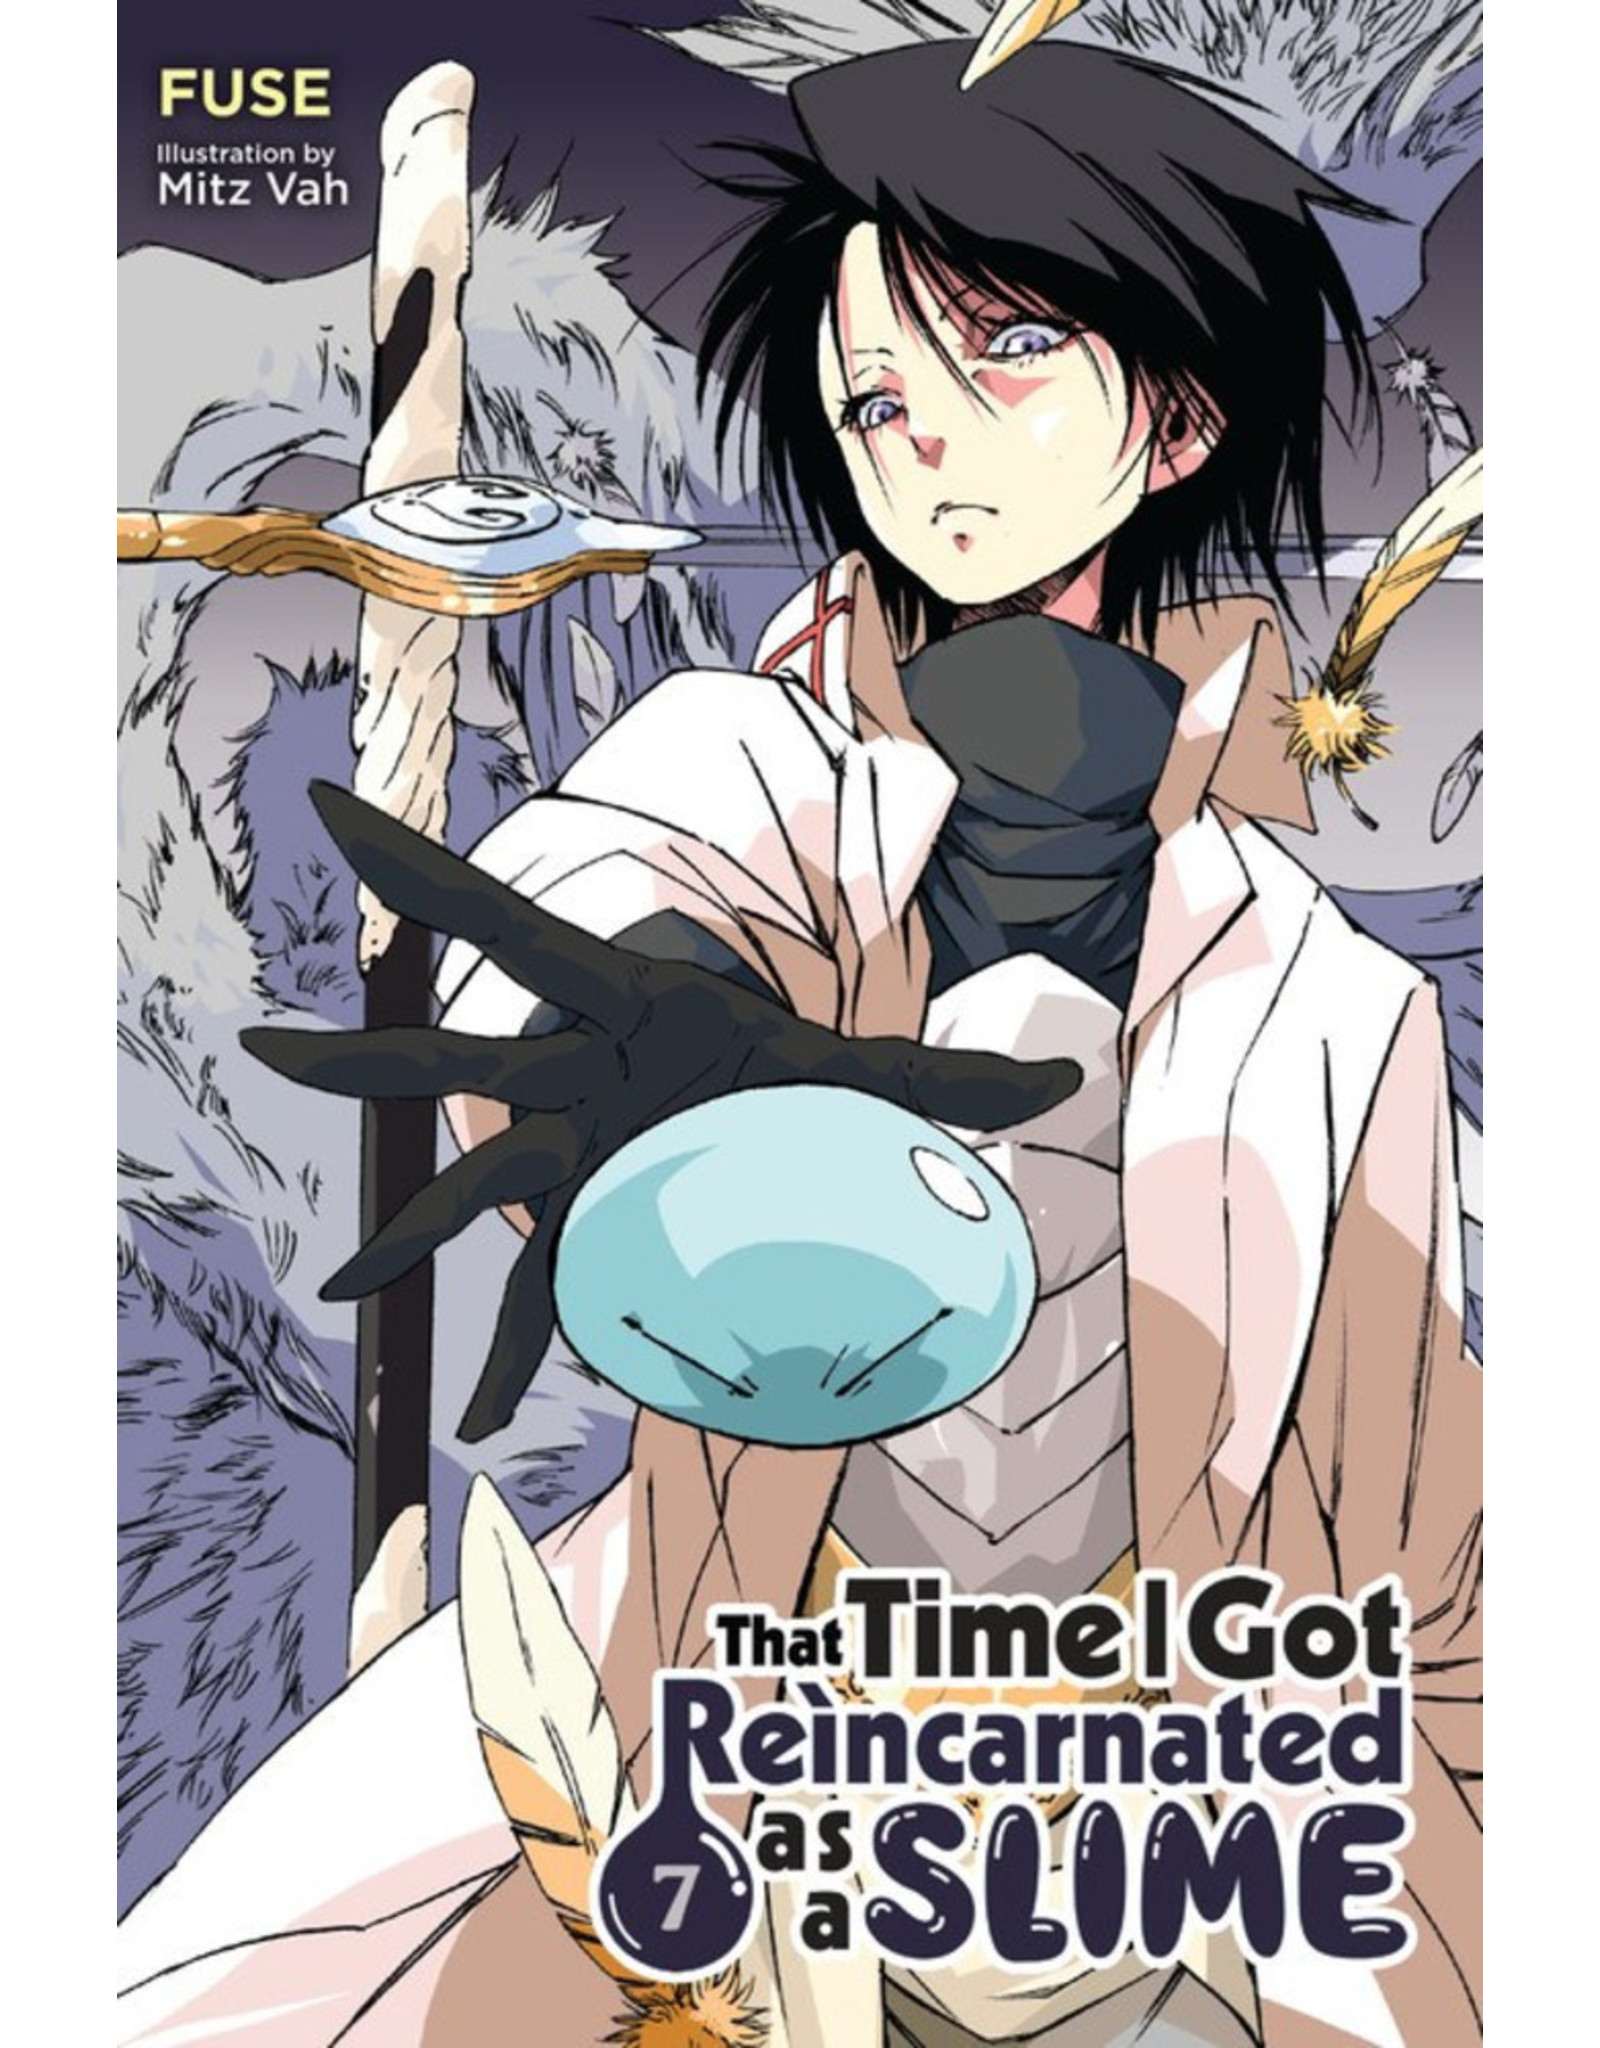 Reincarnated as a Slime- Light Novel vol. 7